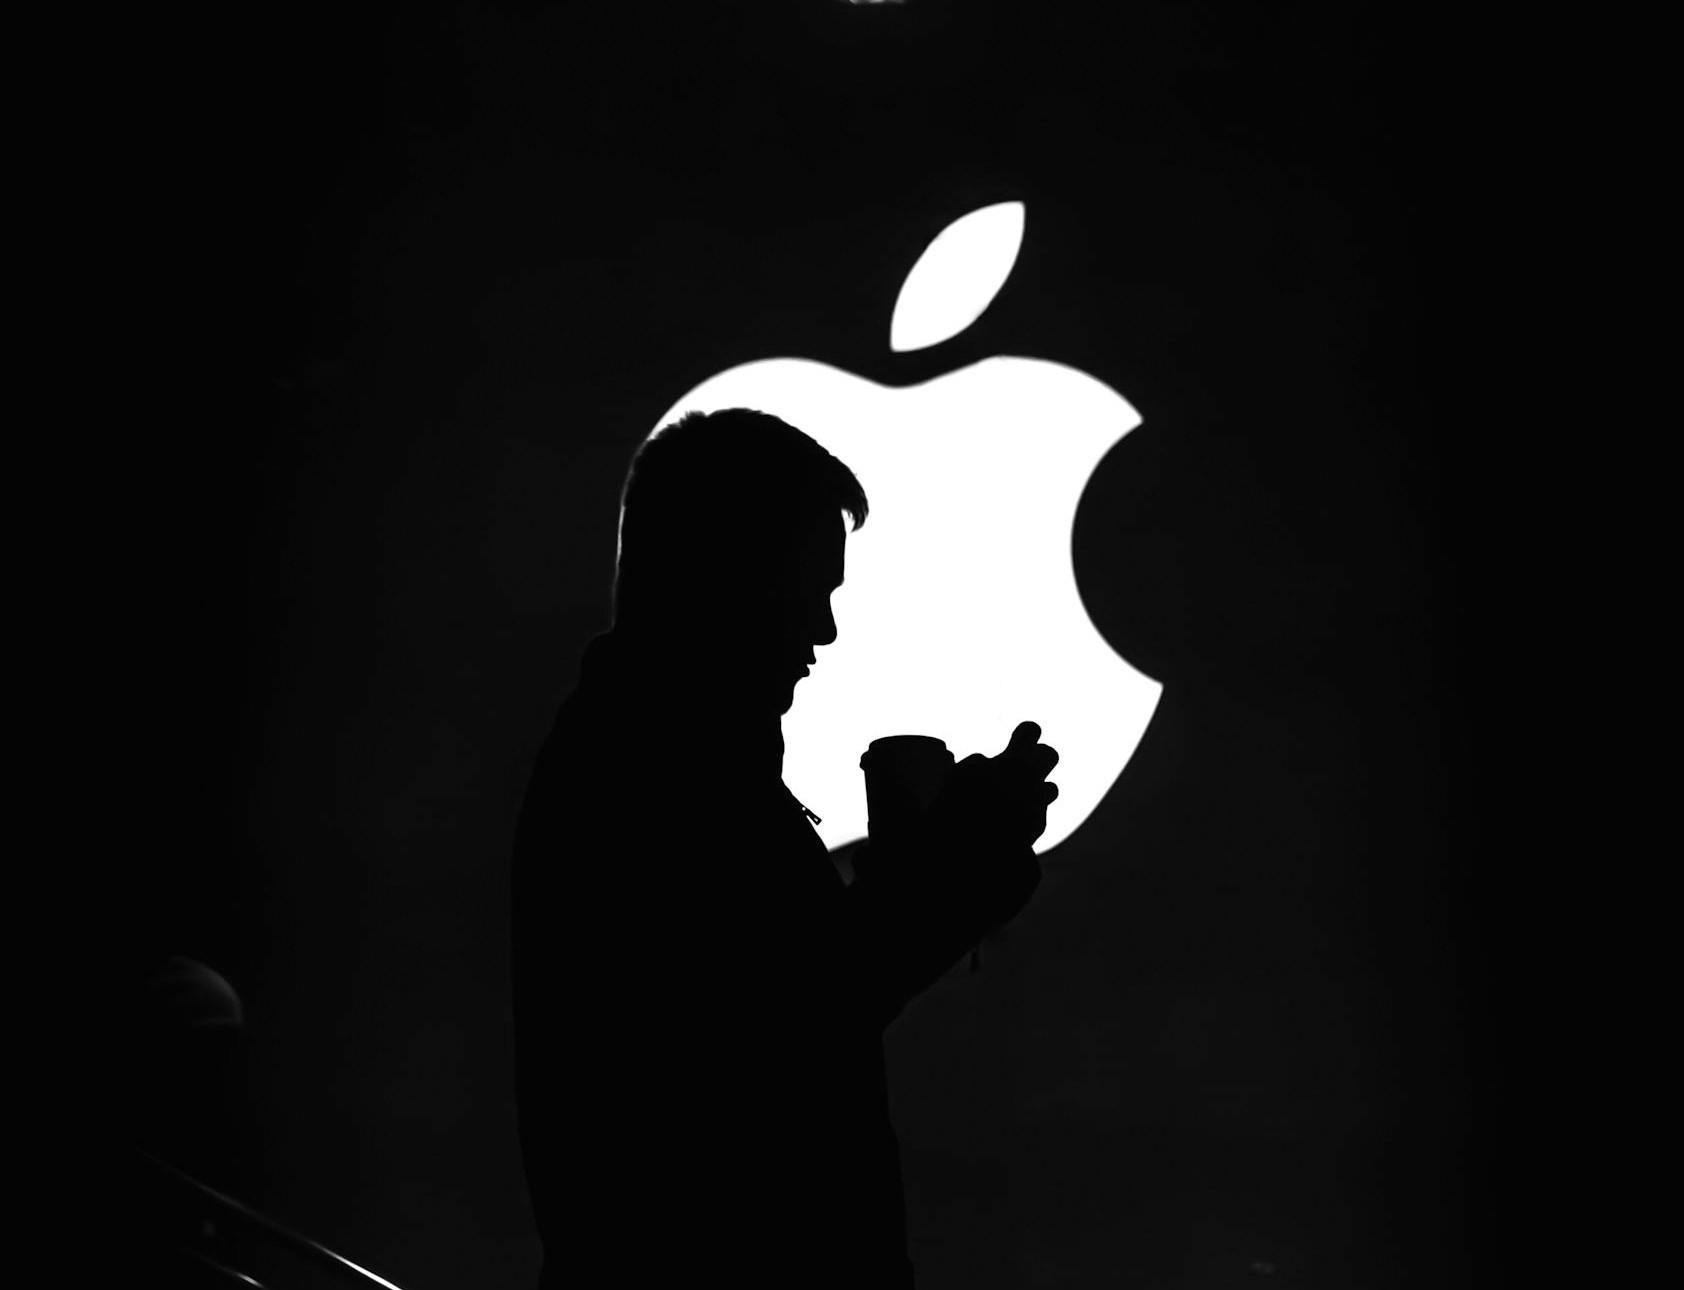 Op deze afbeelding zien we het logo van Apple waar een man voor loopt. Het logo van Apple is een beeldlogo, dit kan omdat Apple zo'n hoge naamsbekendheid heeft, dat consumenten al weten dat het om Apple gaat wanneer ze het logo zien.